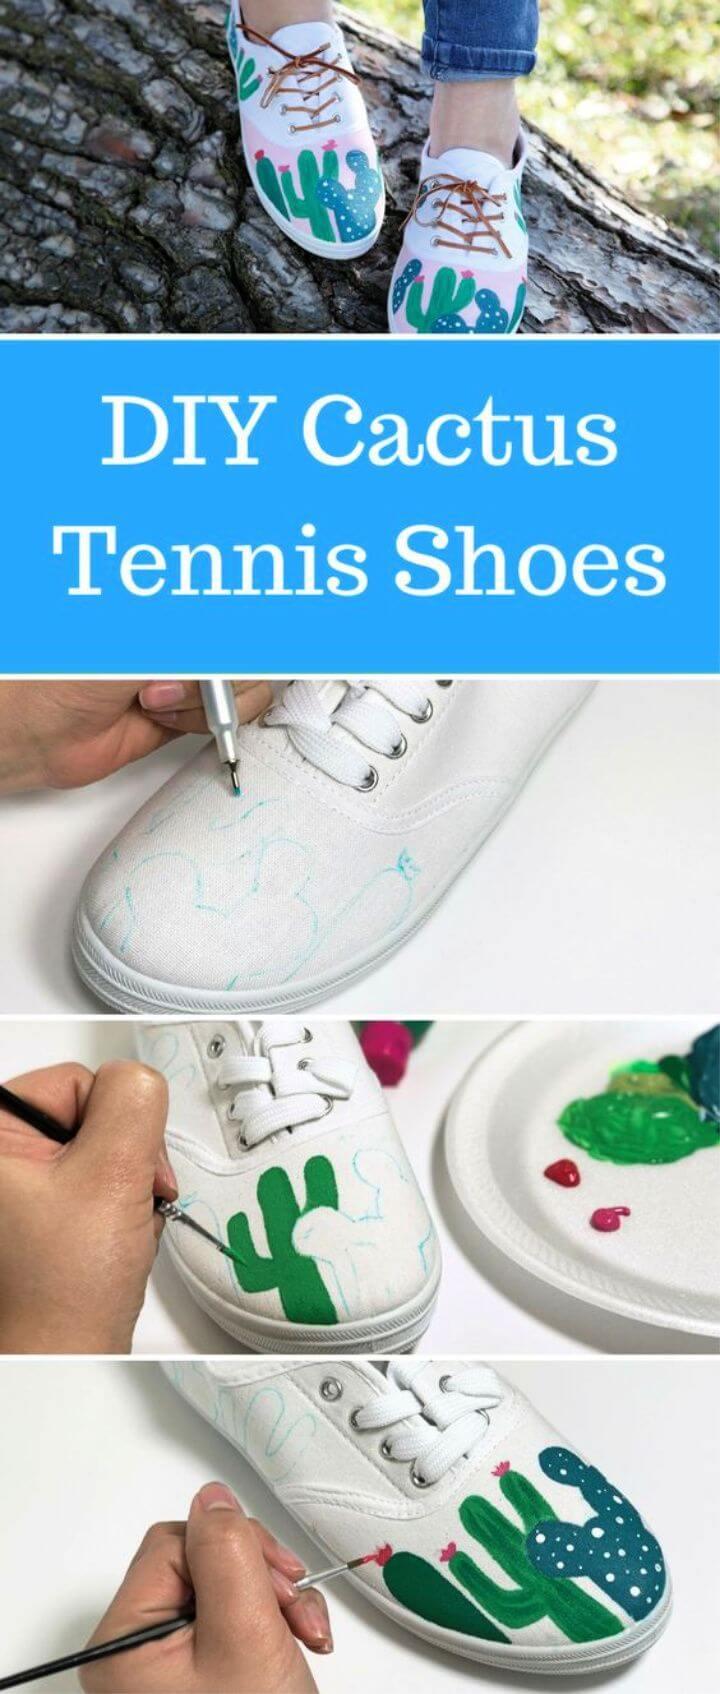 Cactus Tennis Shoes Tutorial